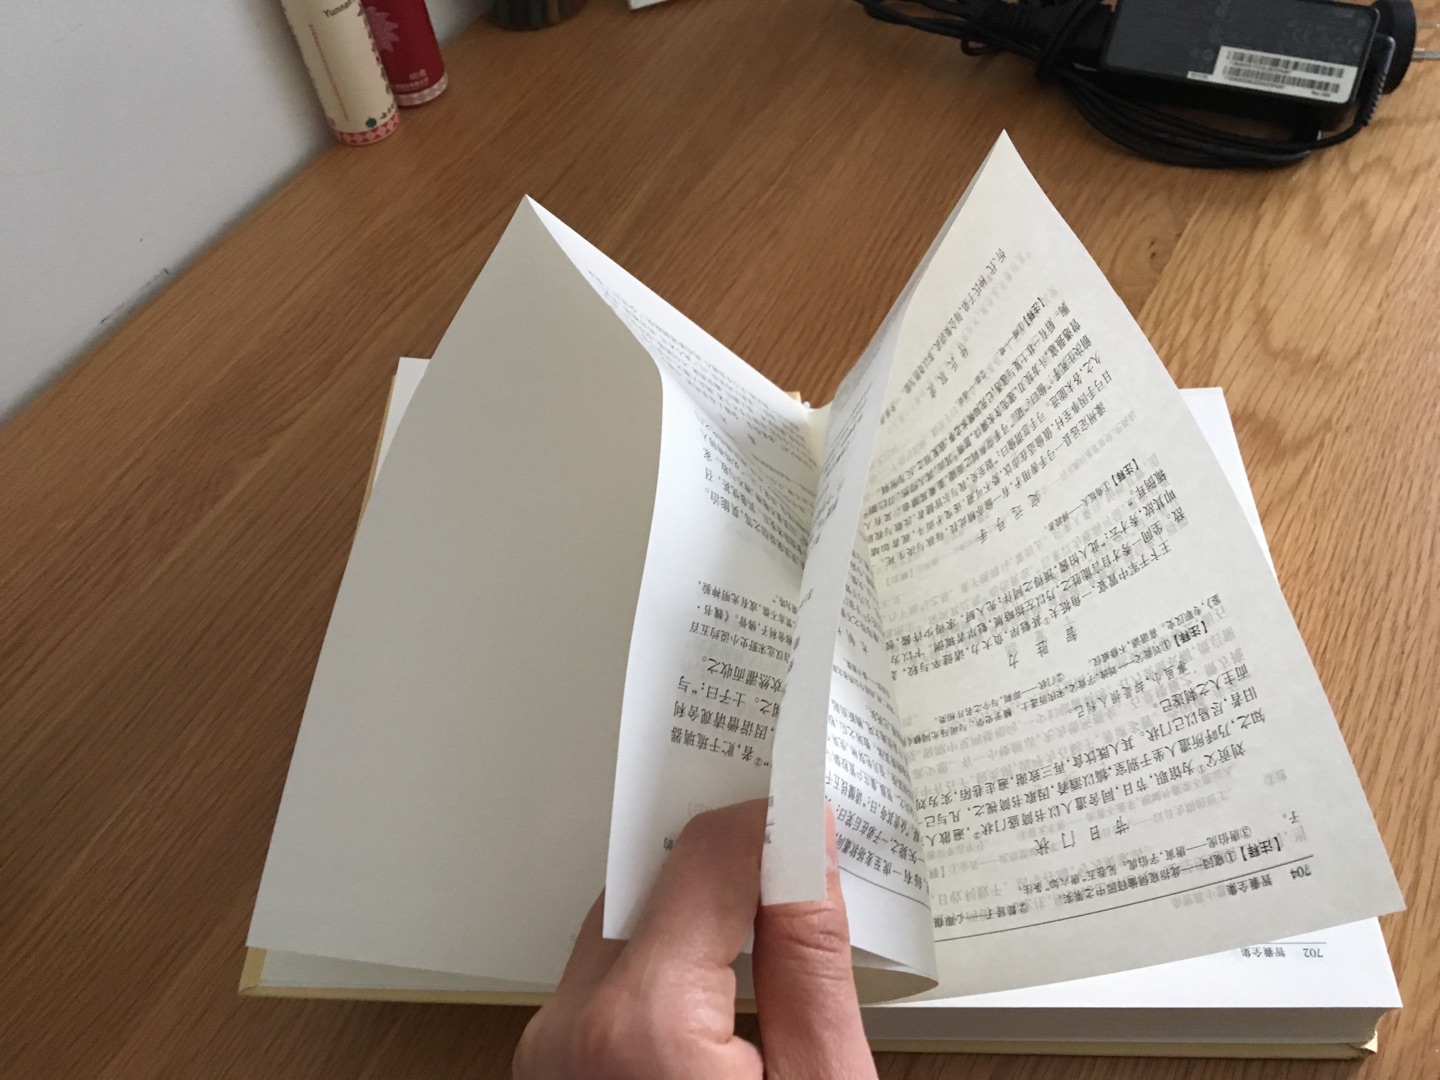 冲着自营买的，专门挑的中华书局出的，结果后面几十页全是连着的，边角磕碰。严重怀疑非正品